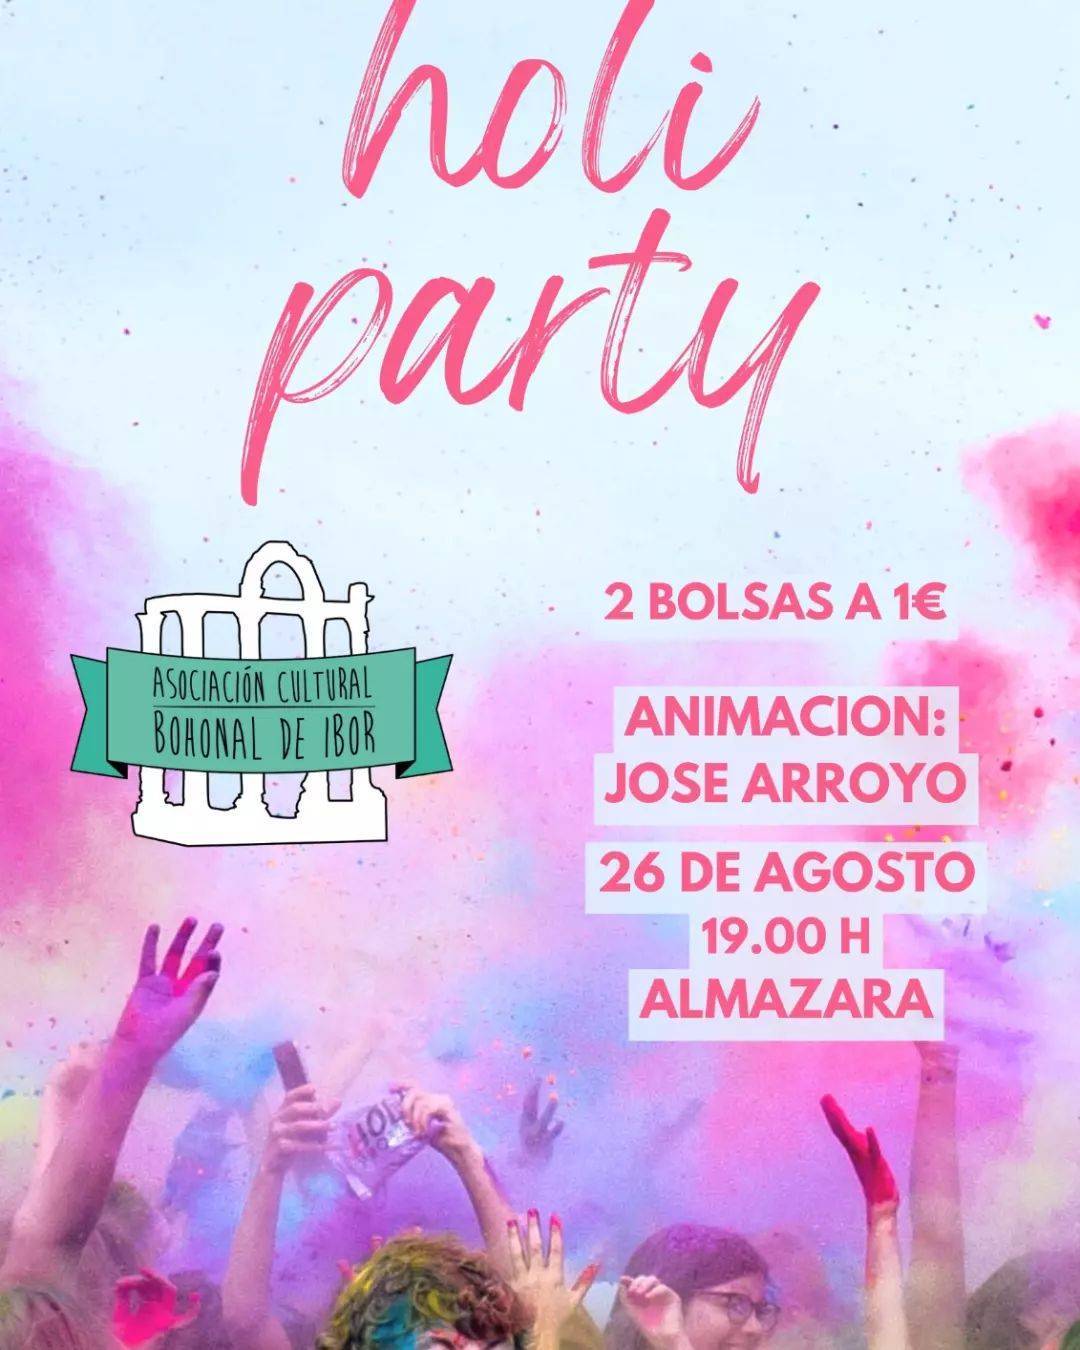 Holi party (2023) - Bohonal de Ibor (Cáceres)